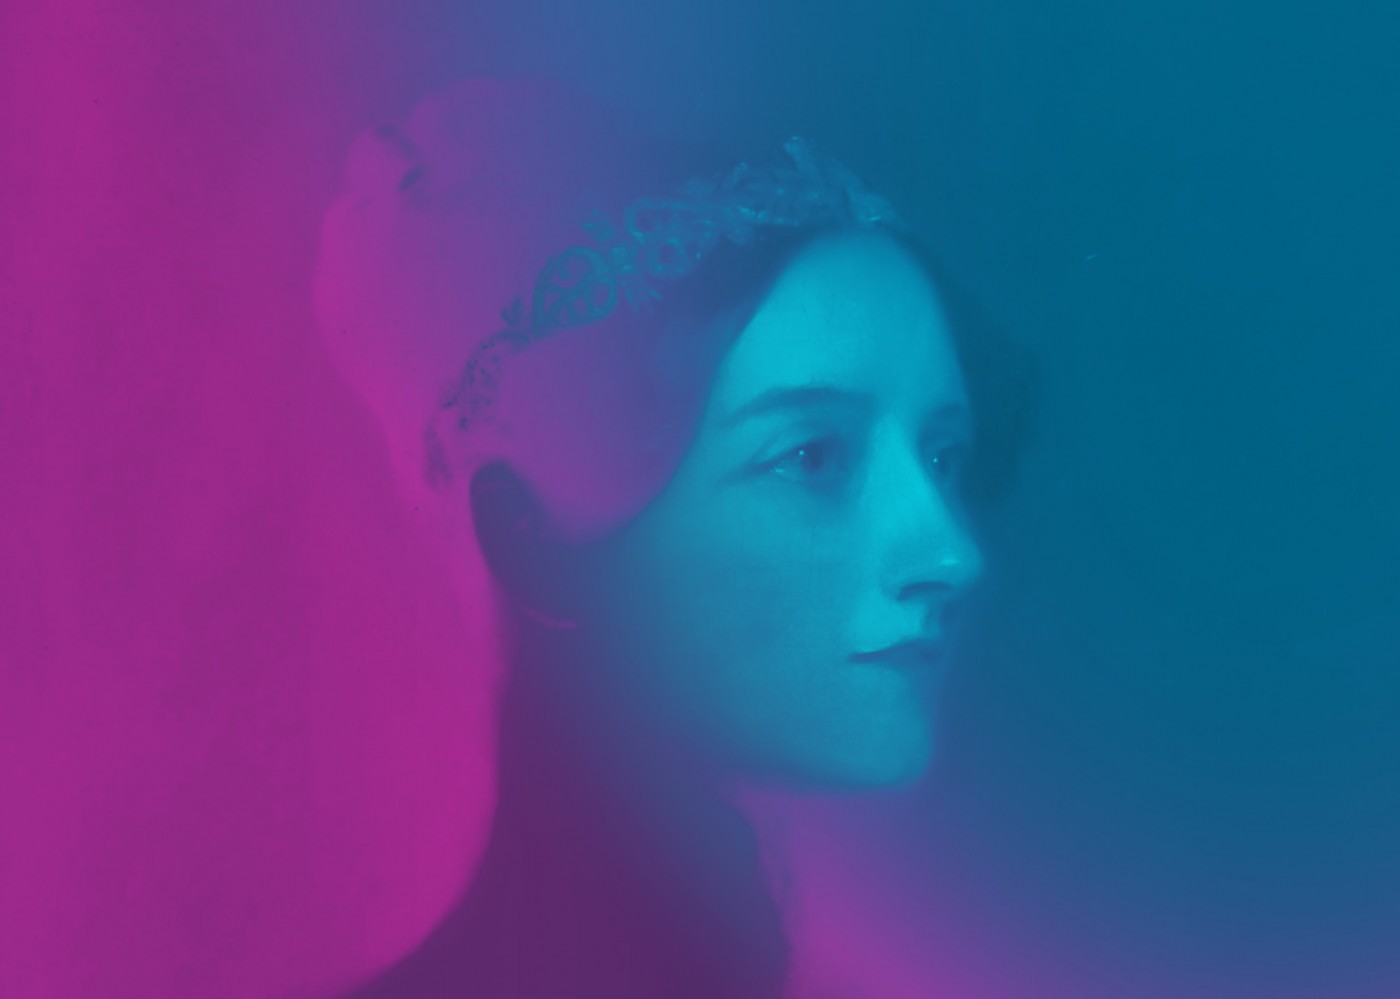 Portrait of Ada Lovelace in purple and blue